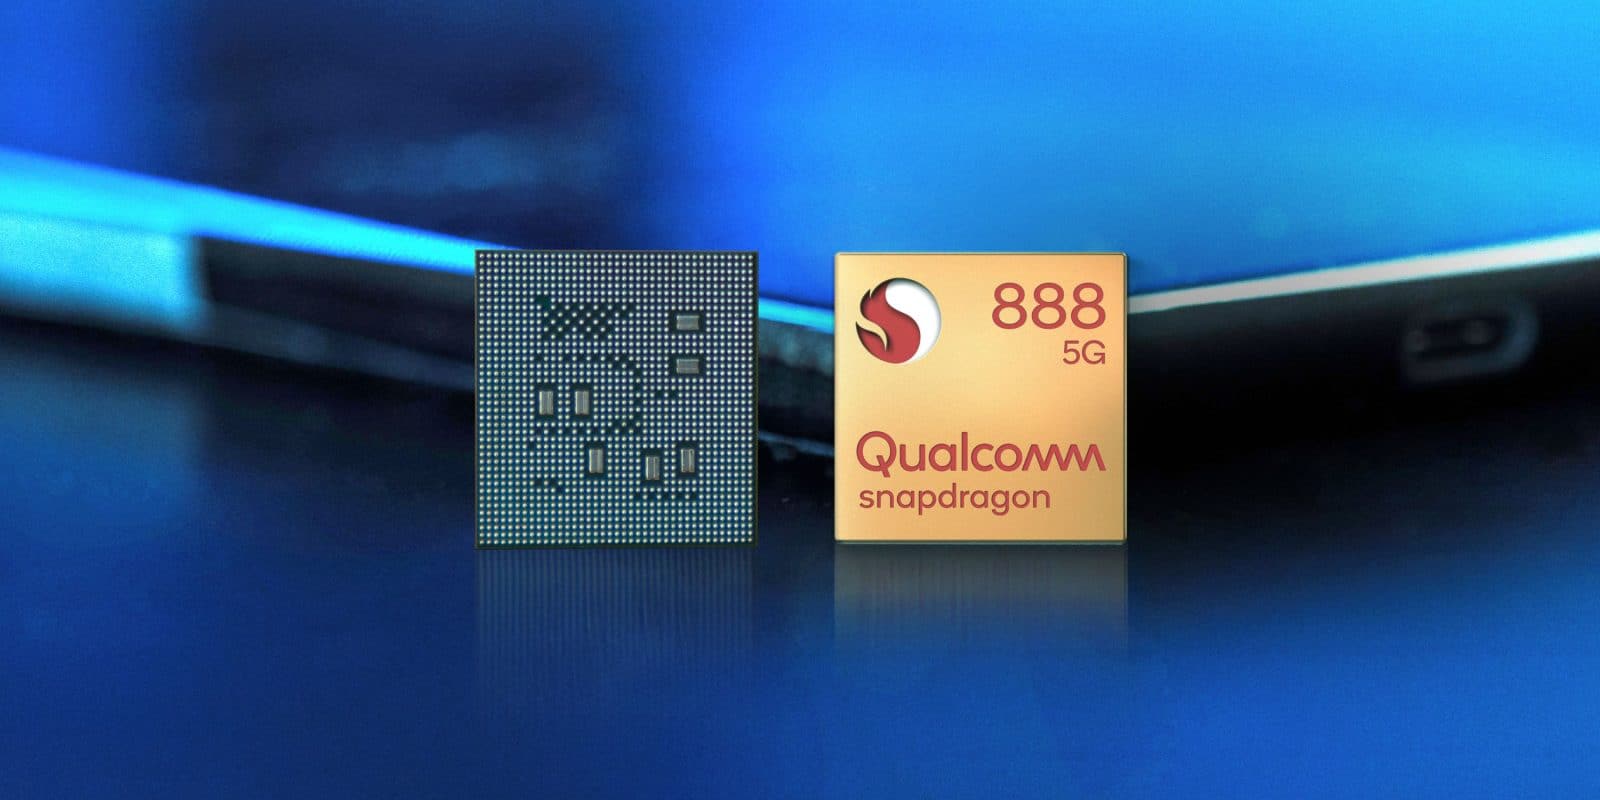 Qualcomm announces Snapdragon 888